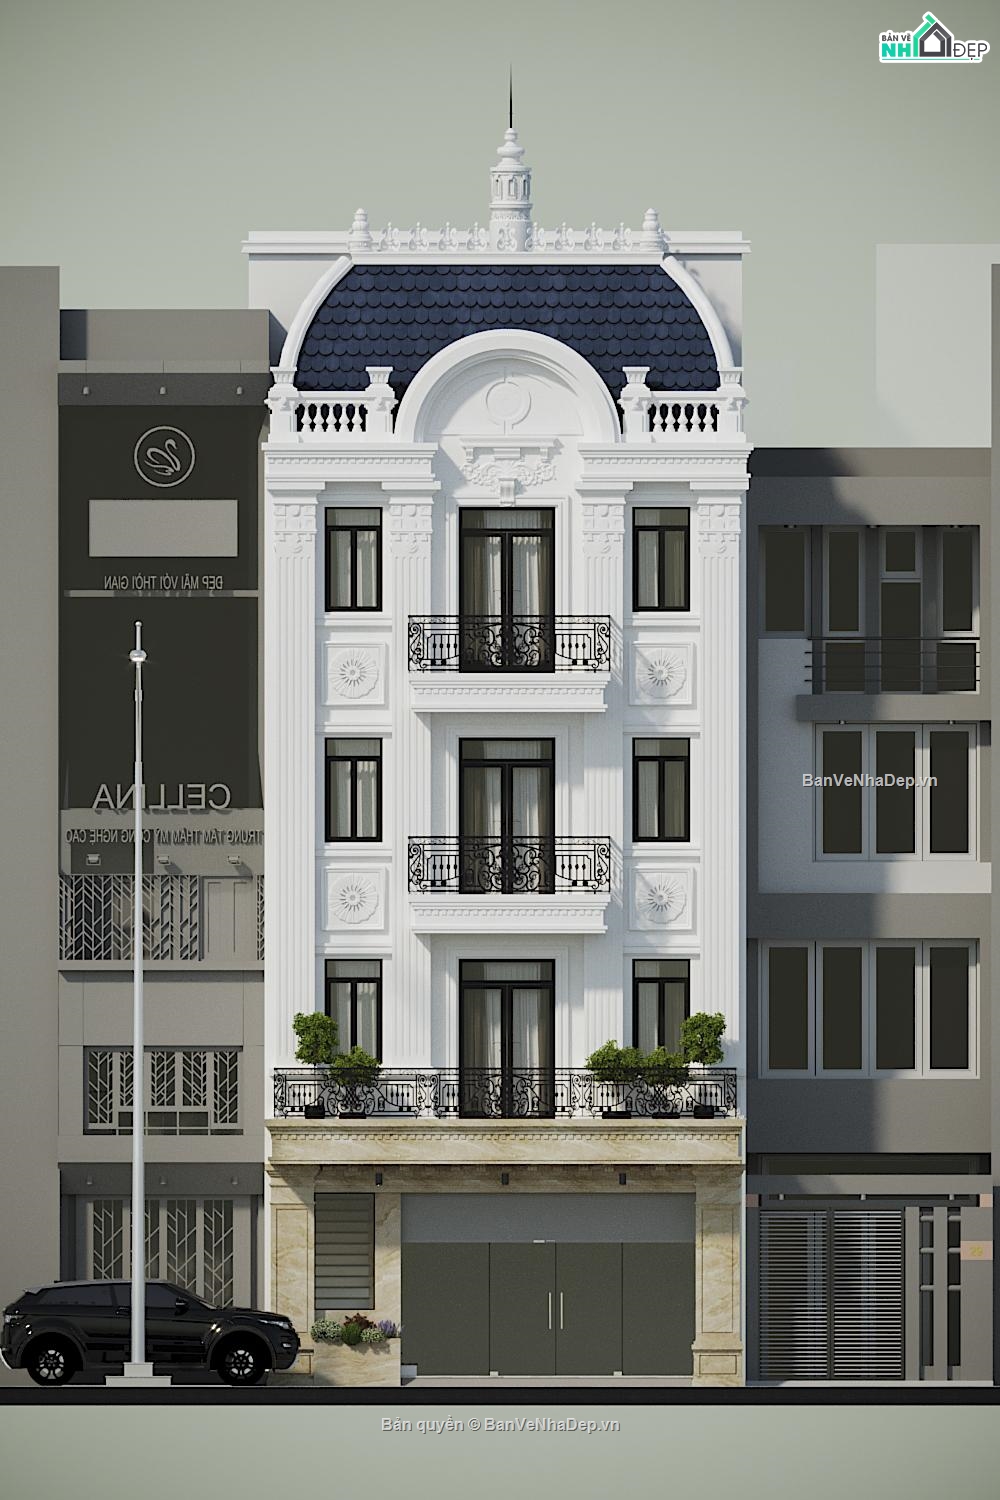 Nhà phố 4 tầng,bản vẽ nhà phố 4 tầng,Bản vẽ nhà phố 4 tầng đẹp,Autocad bản vẽ nhà phố 4 tầng